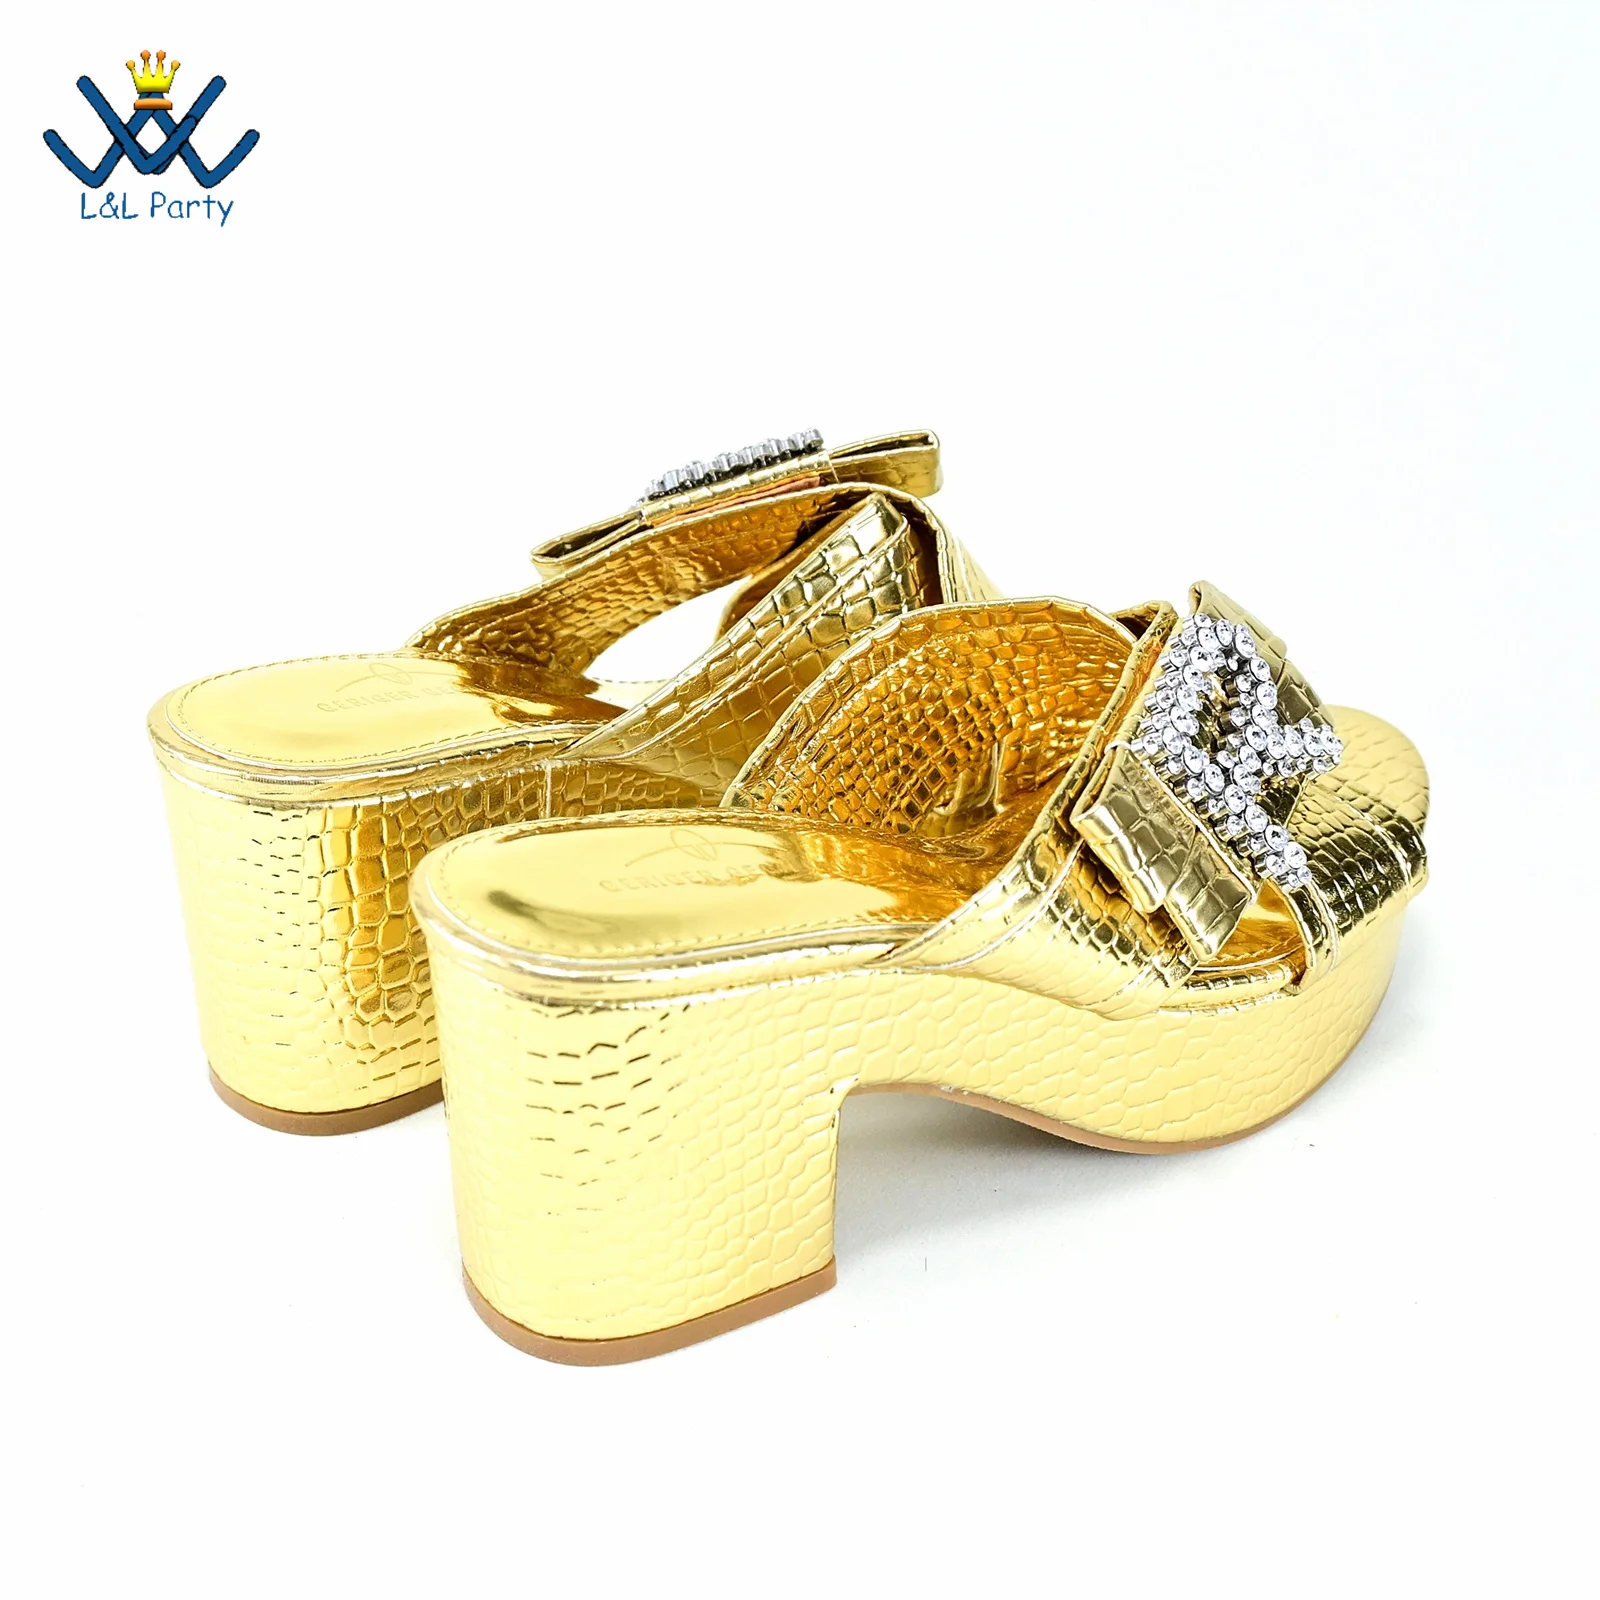 Классика Новые поступления Обувь итальянского дизайна Сумка в тон золотого цвета в британском стиле Удобные каблуки со сверкающими кристаллами